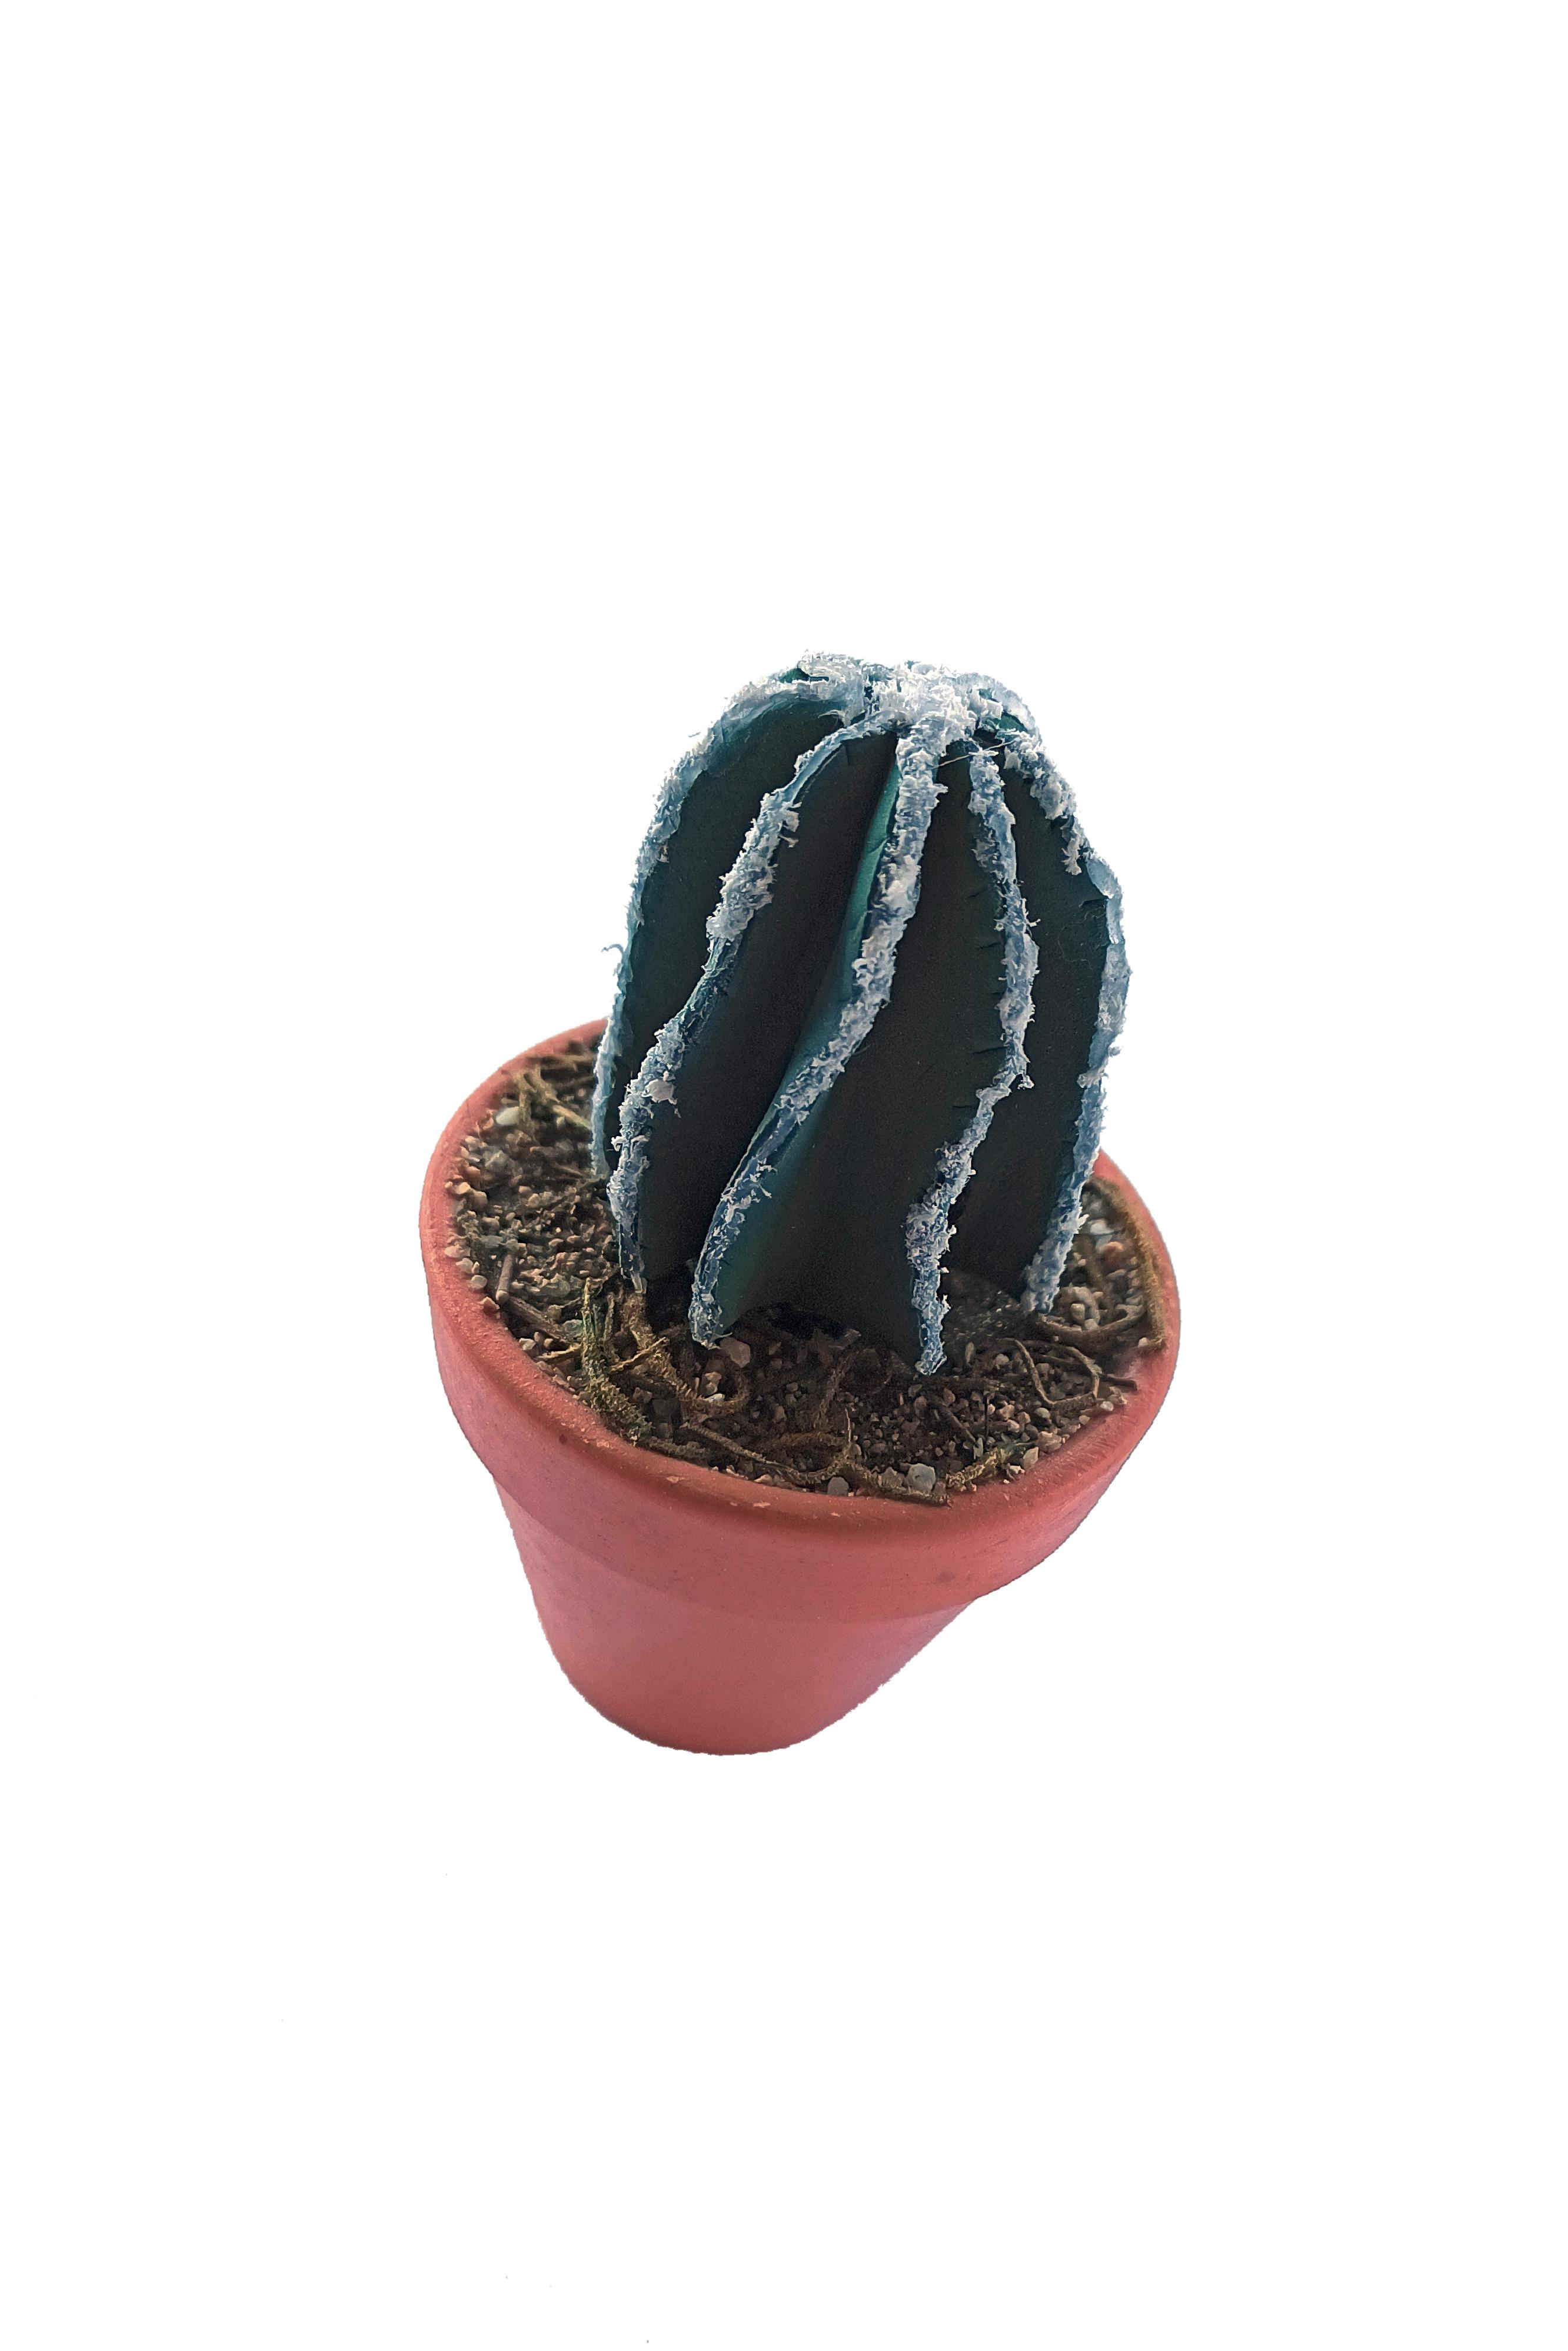 PG056 - Cactus